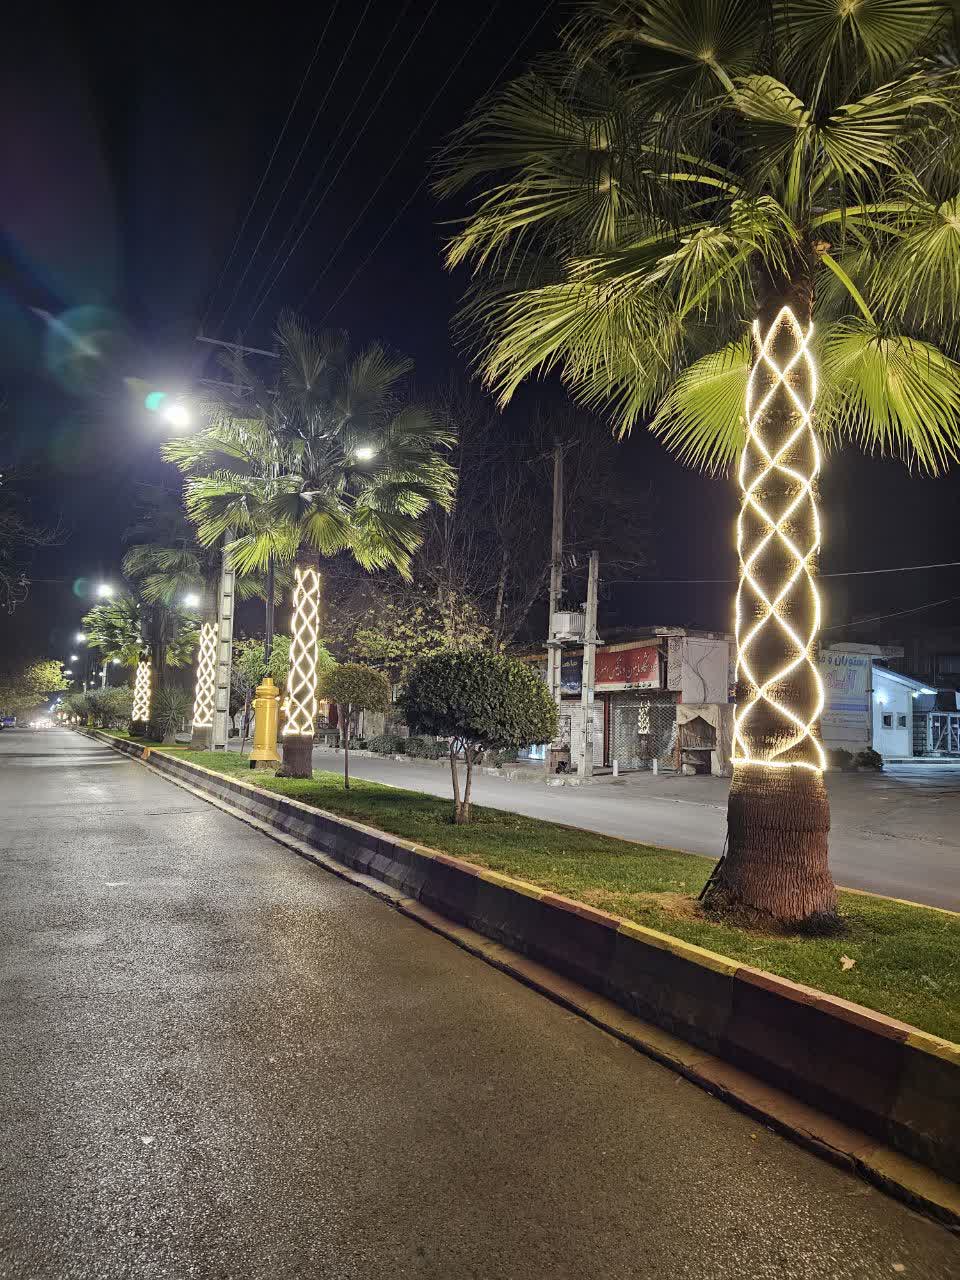 نورپردازی سیمای شهر آمل